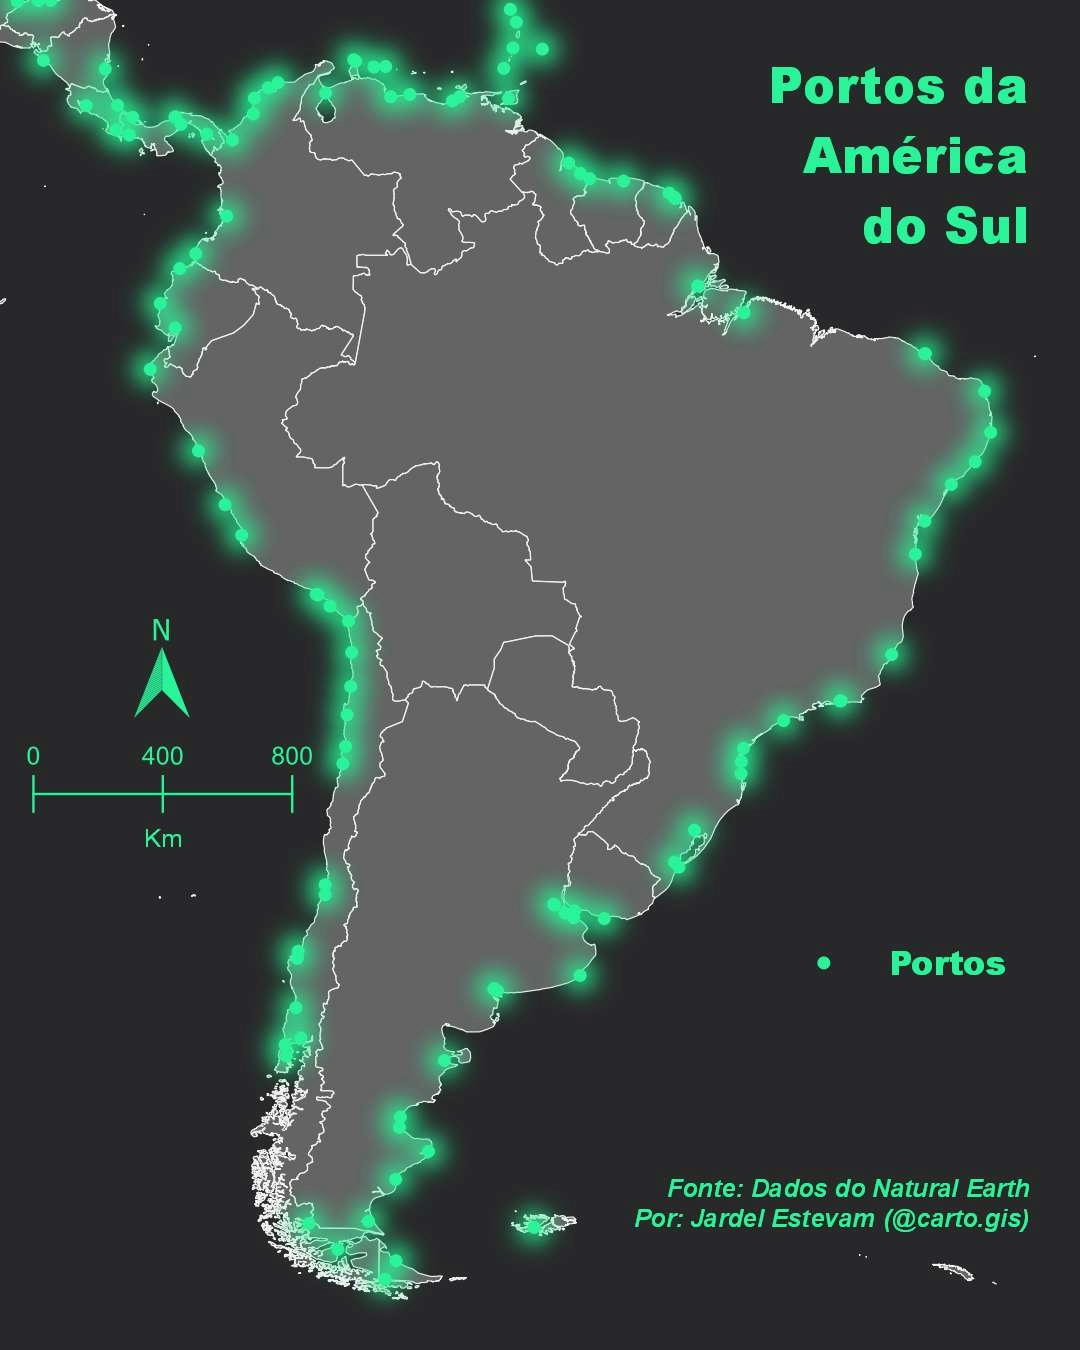 Portos da América do Sul